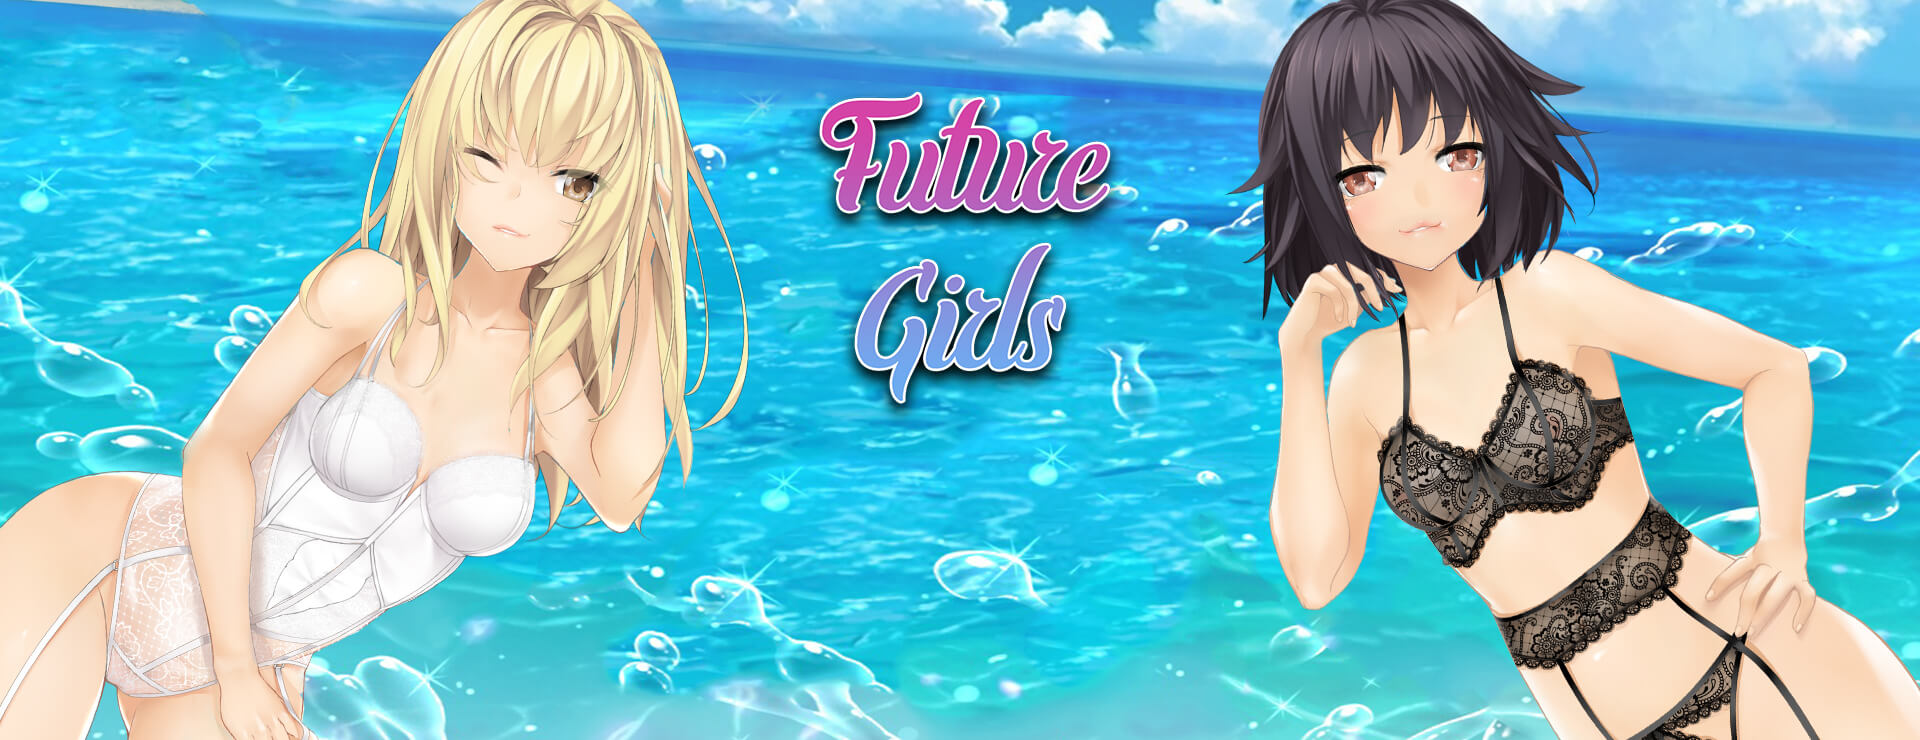 Future Girls - ビジュアルノベル ゲーム